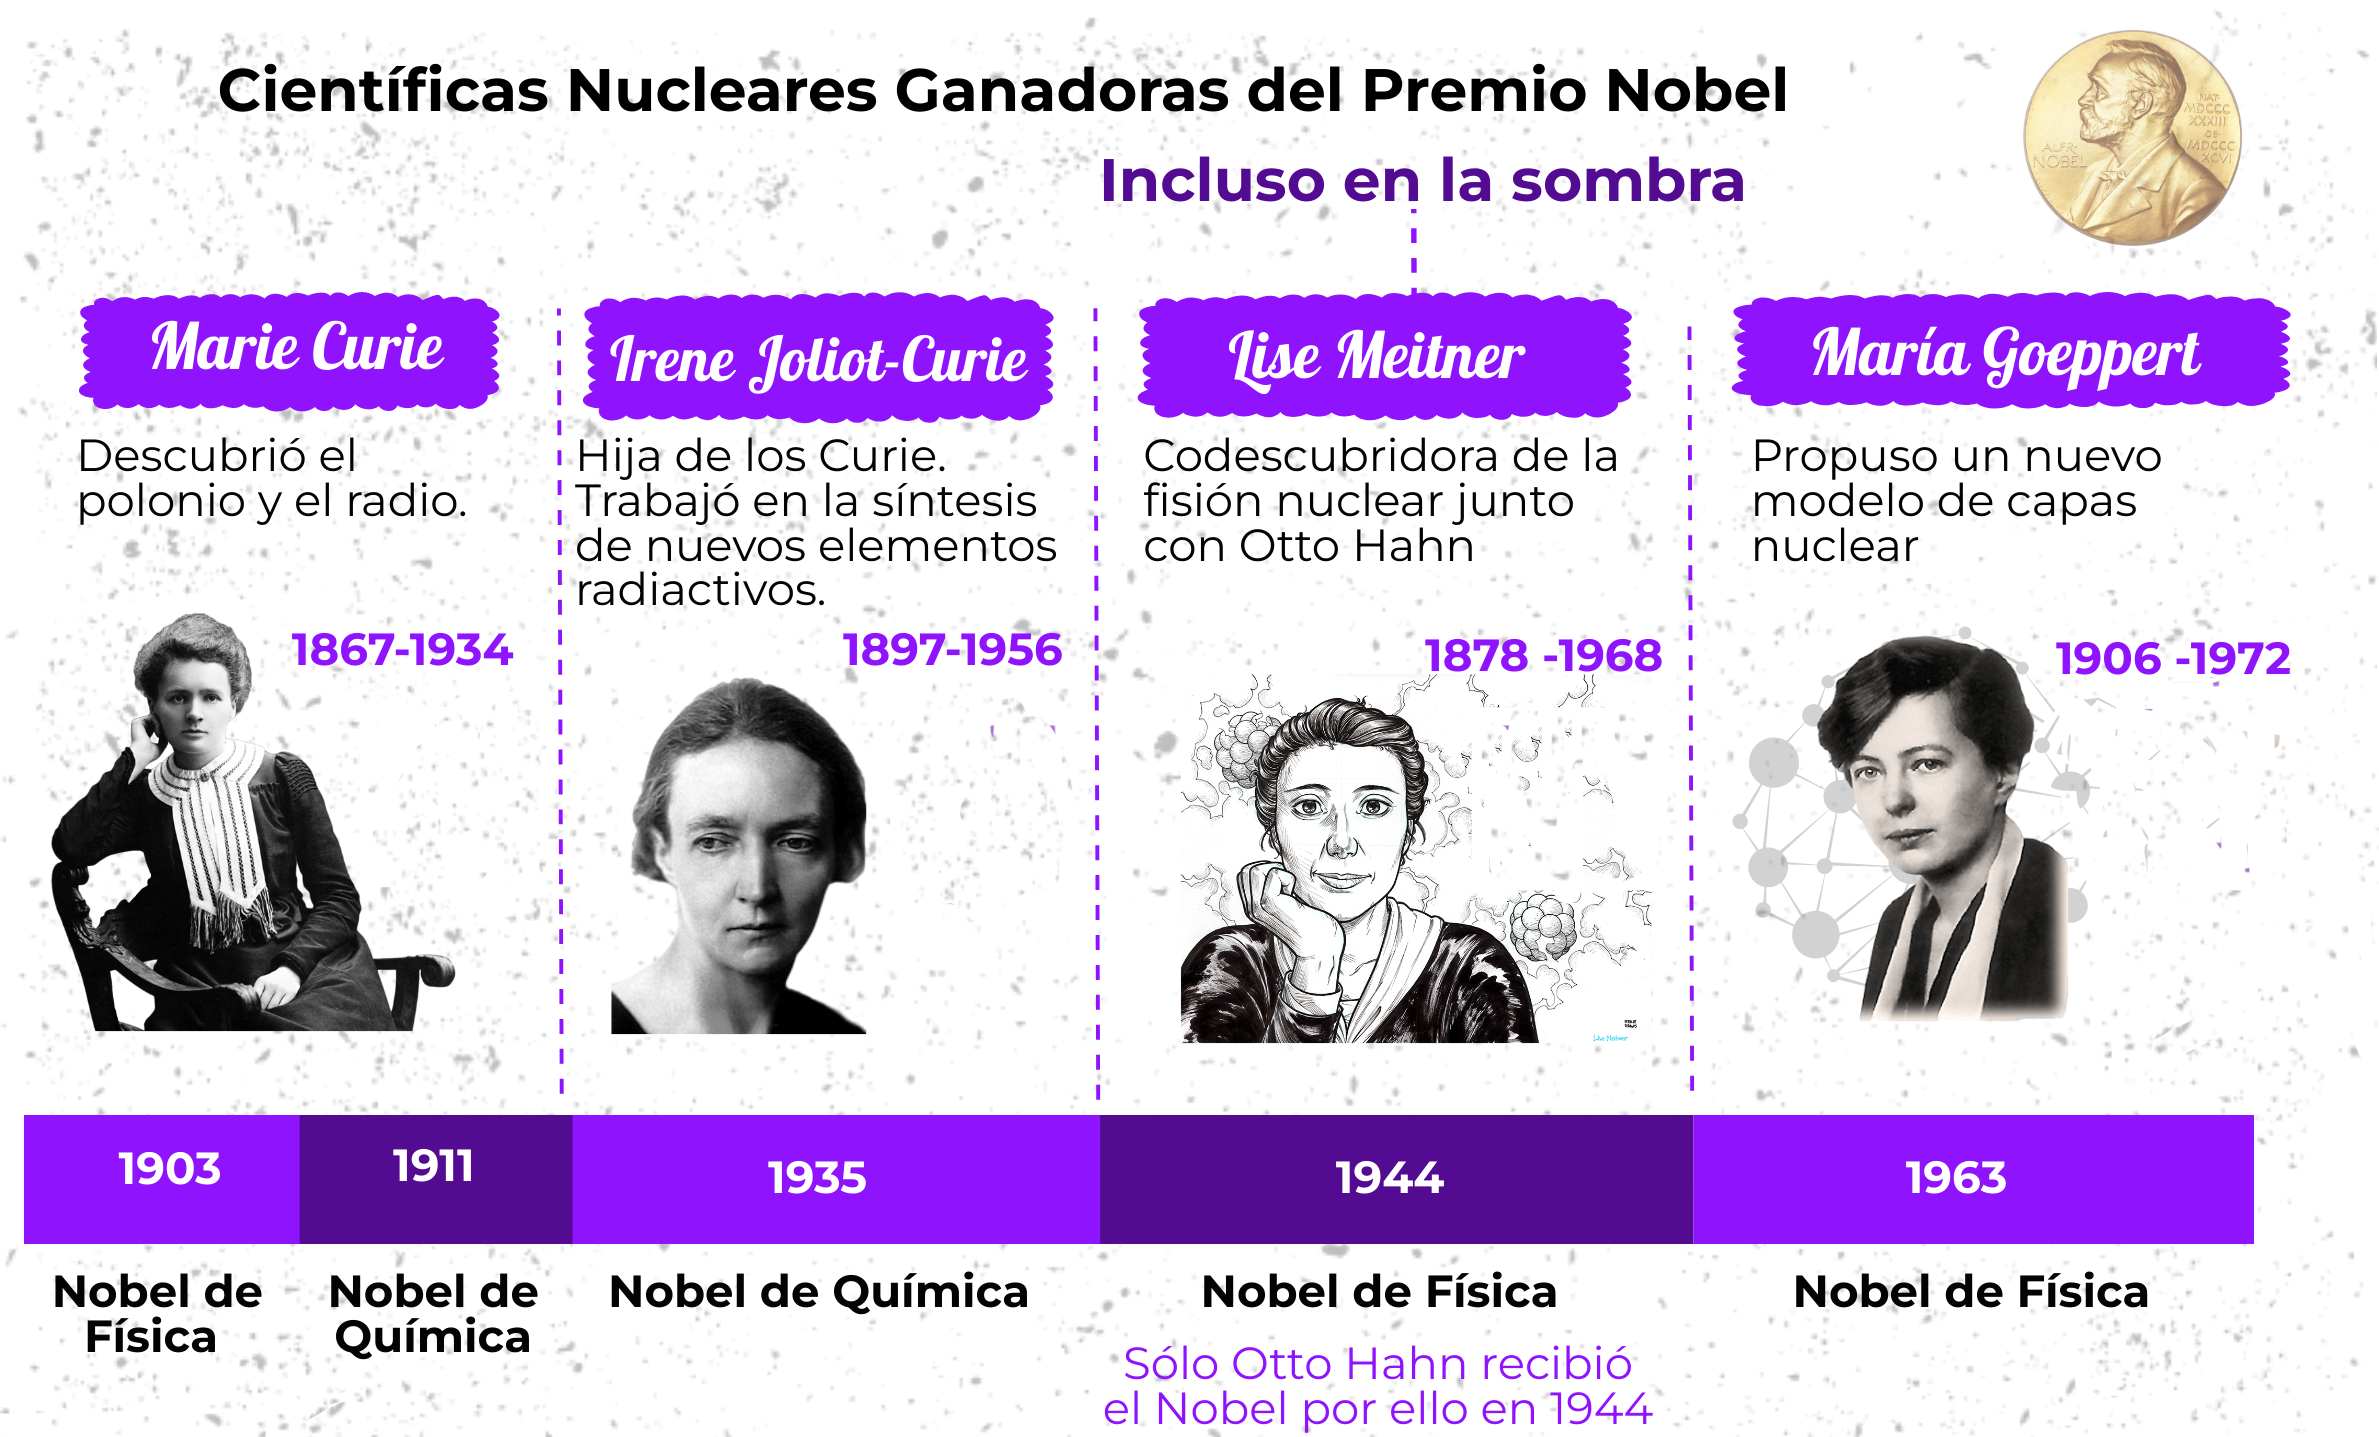 Quiz sobre Científicas Nucleares Ganadoras de un Premio Nobel